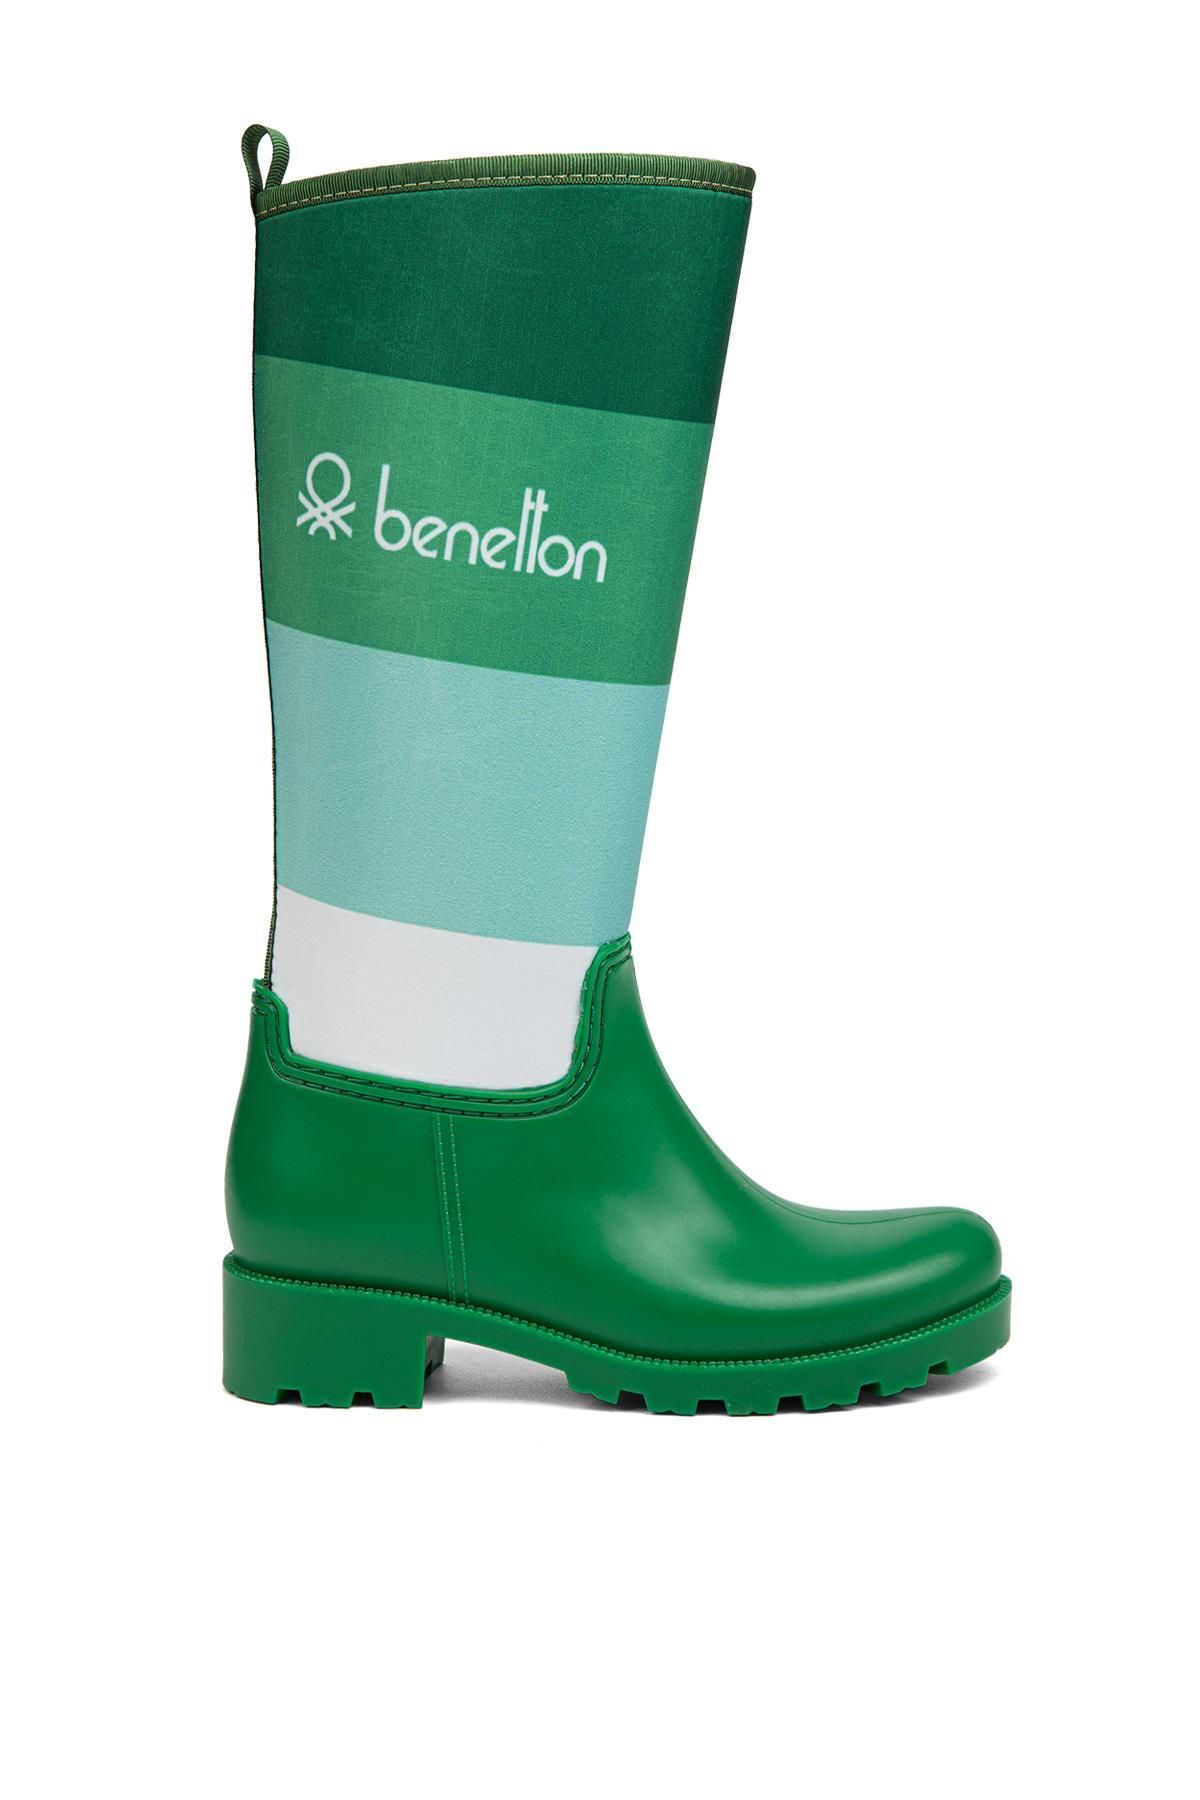 Benetton ® | BN-50010 - 34124 Yeşil - Kadın Çizme